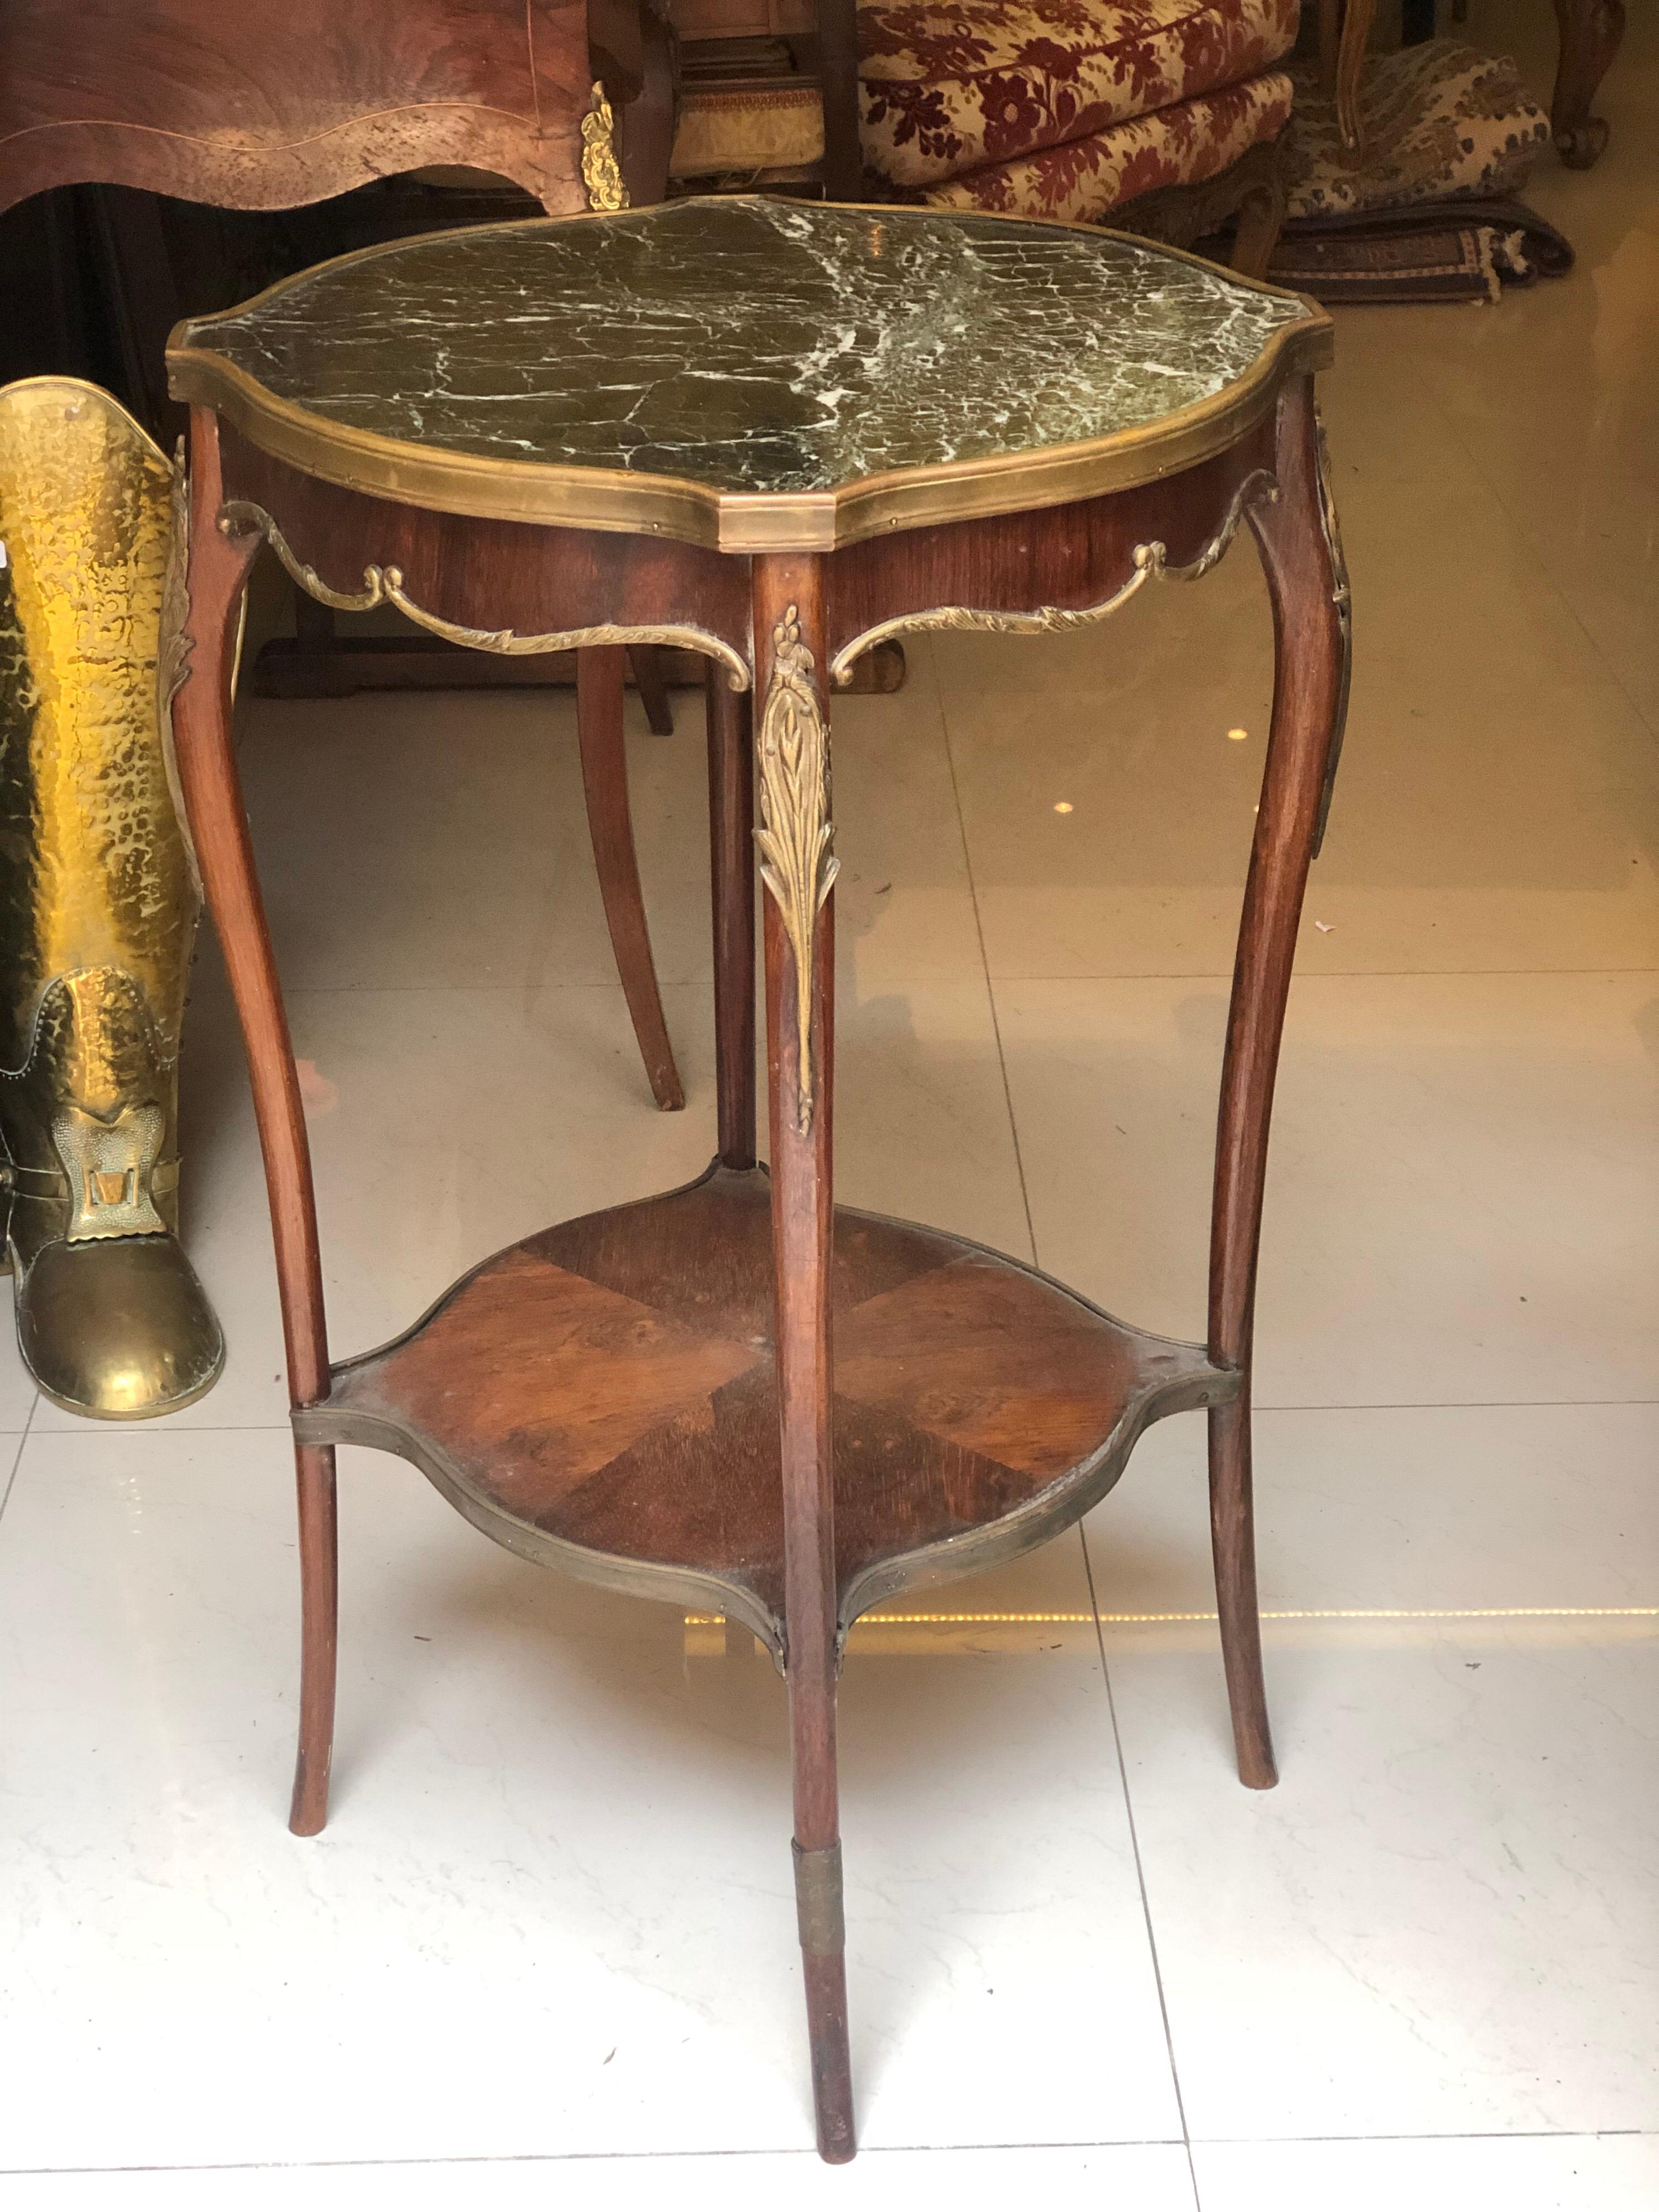 Eleganter runder Sockeltisch aus furniertem Holz und Bronzeelementen, gebogene Beine, die durch eine Schrittplatte verbunden sind, eingebautes Marmortablett, Stil Louis XV.
Frankreich, um 1870.
Maße: H 75, T 44 cm.